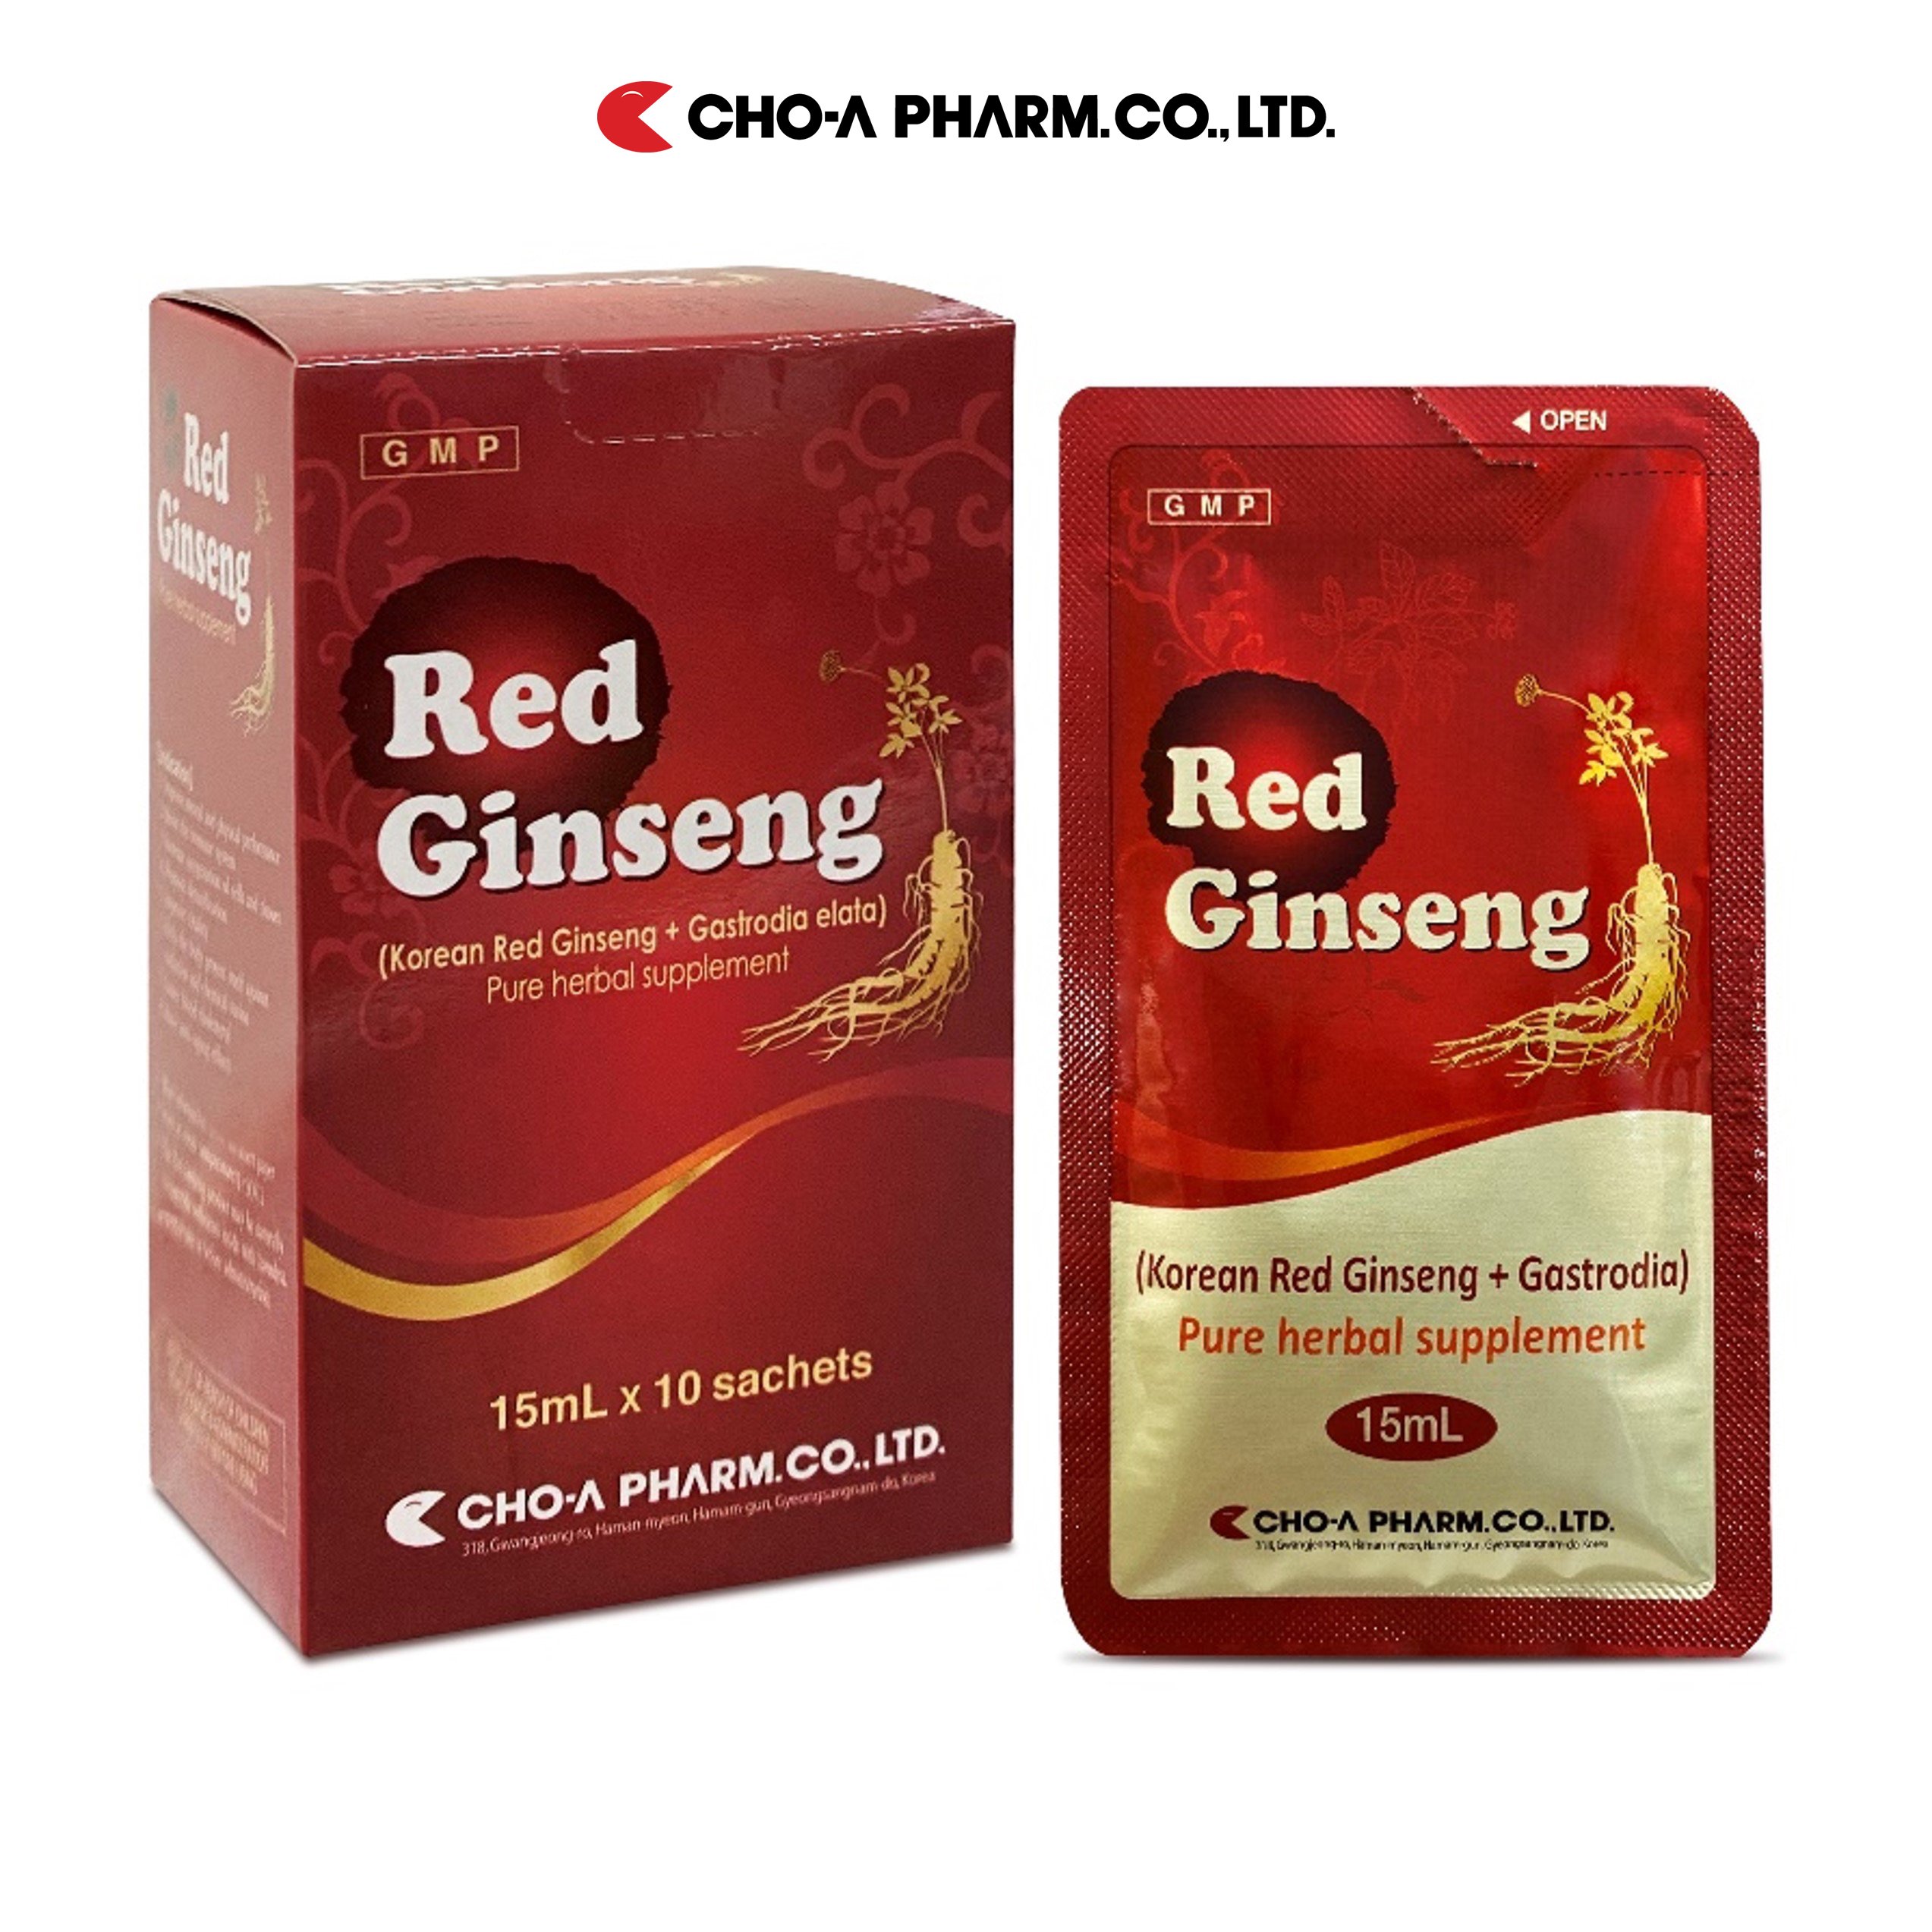 Hồng Sâm Hàn Quốc Red Ginseng Cho-A Pharm Tăng Đề Kháng, Chống Lão Hóa Mua 2 Tặng 2